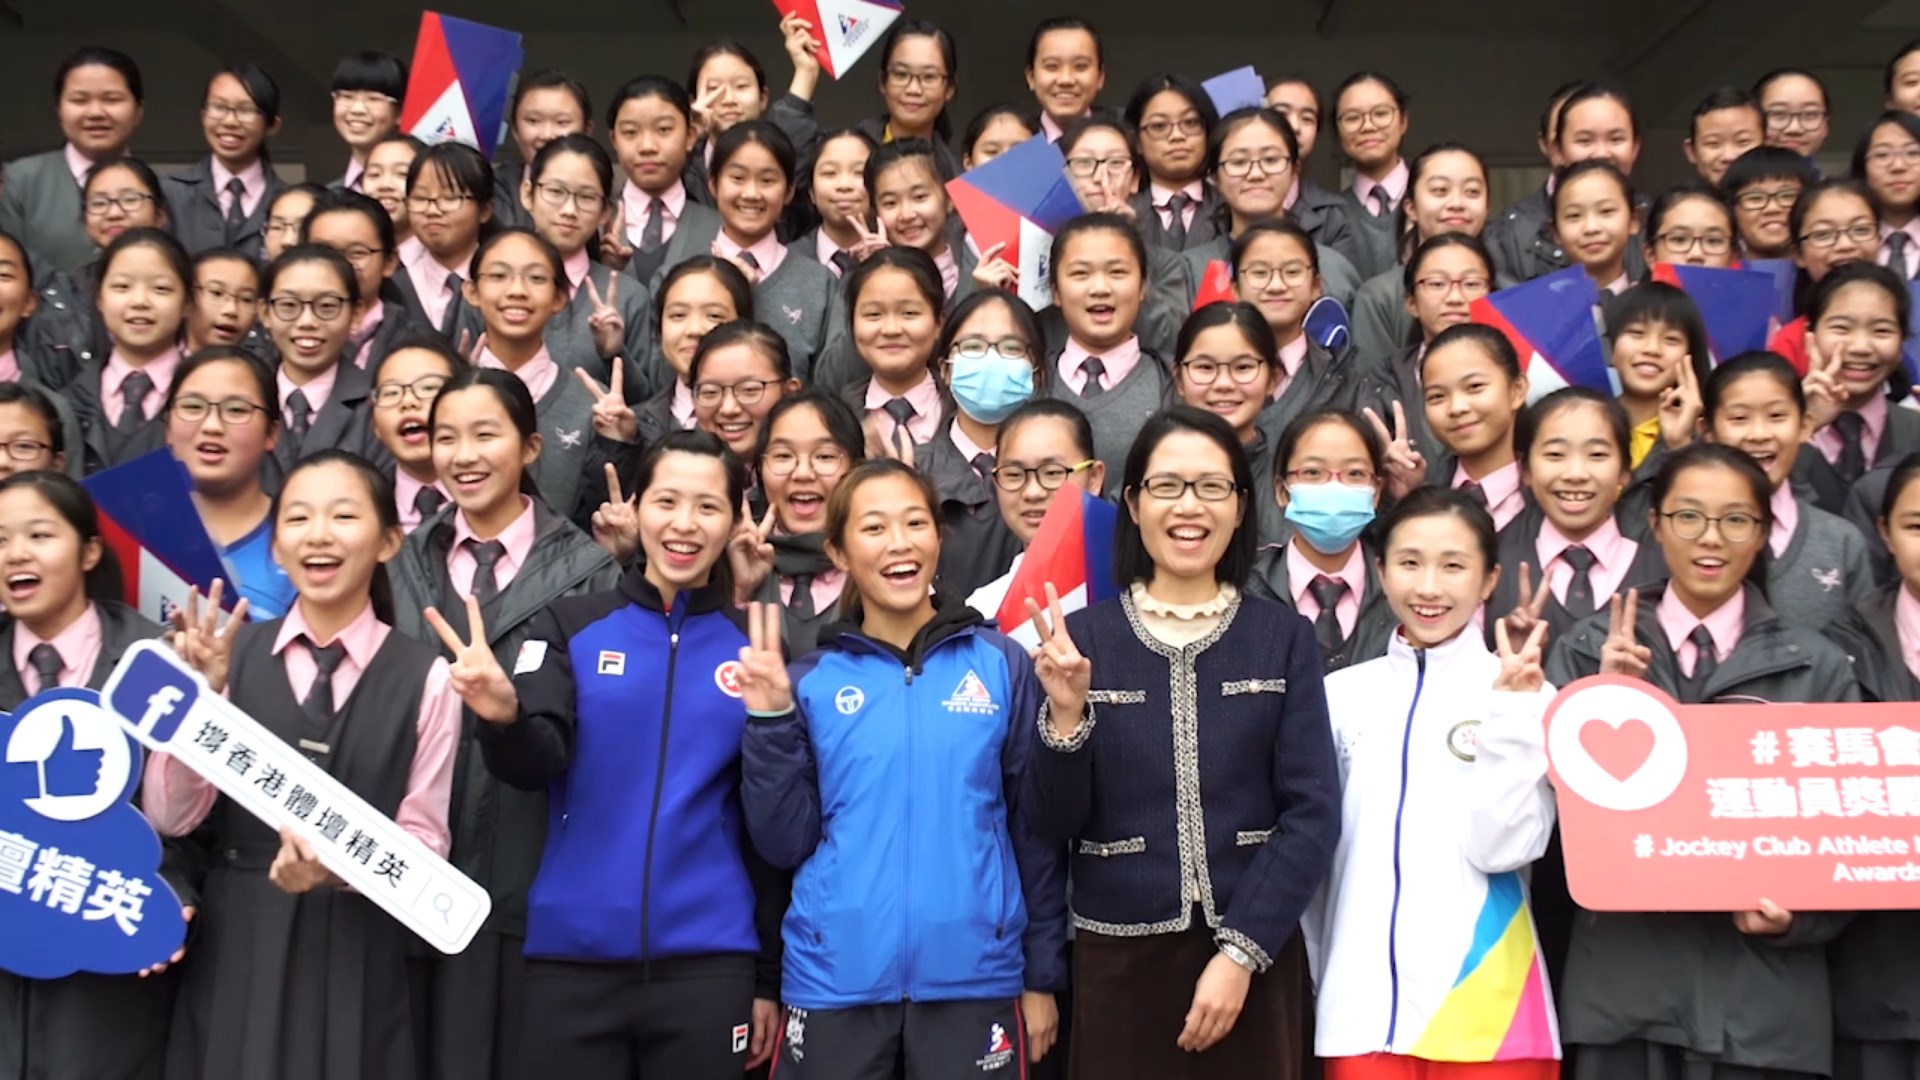 Hong Kong athletes visit various schools